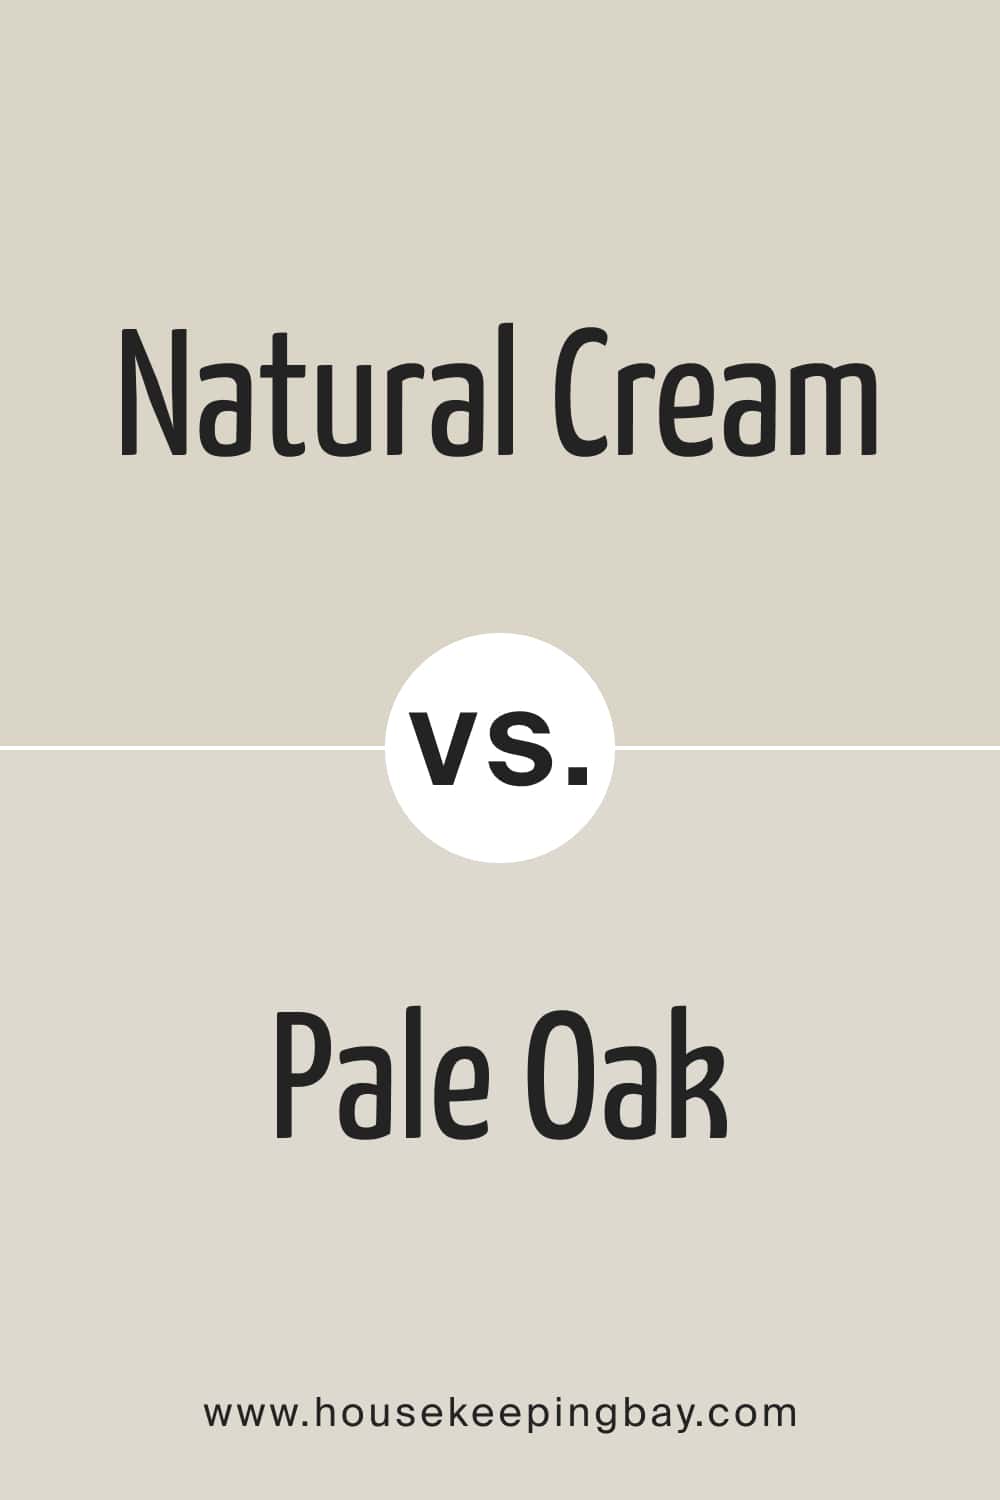 Natural Cream vs Pale Oak